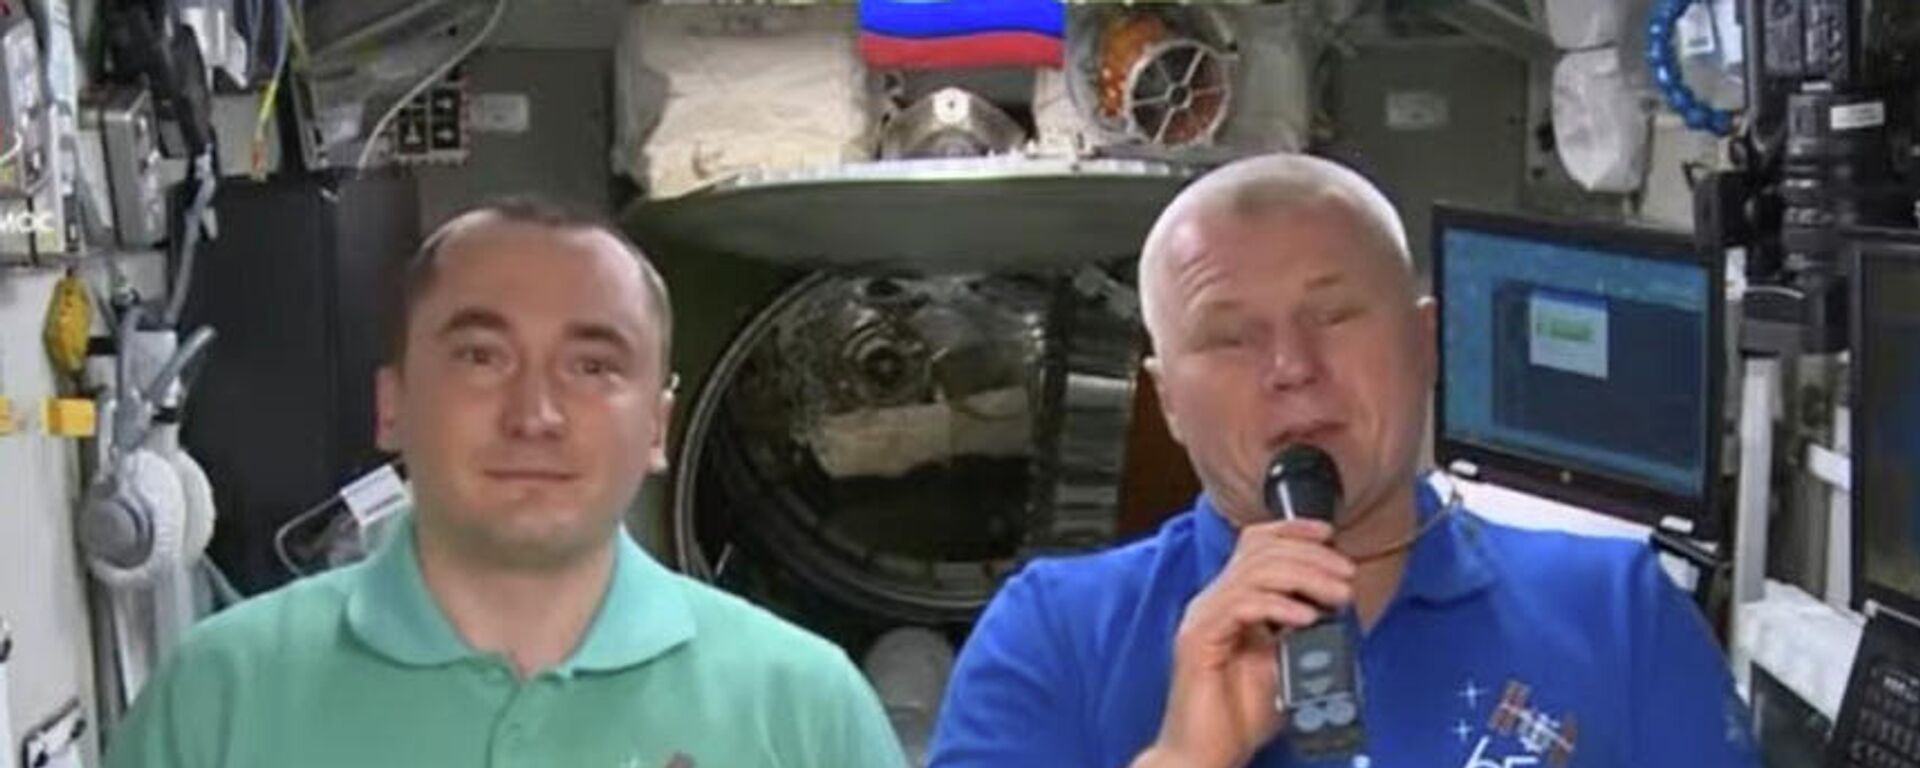  Piotr Dubrov y Oleg Novitski, cosmonautas rusos - Sputnik Mundo, 1920, 23.09.2021